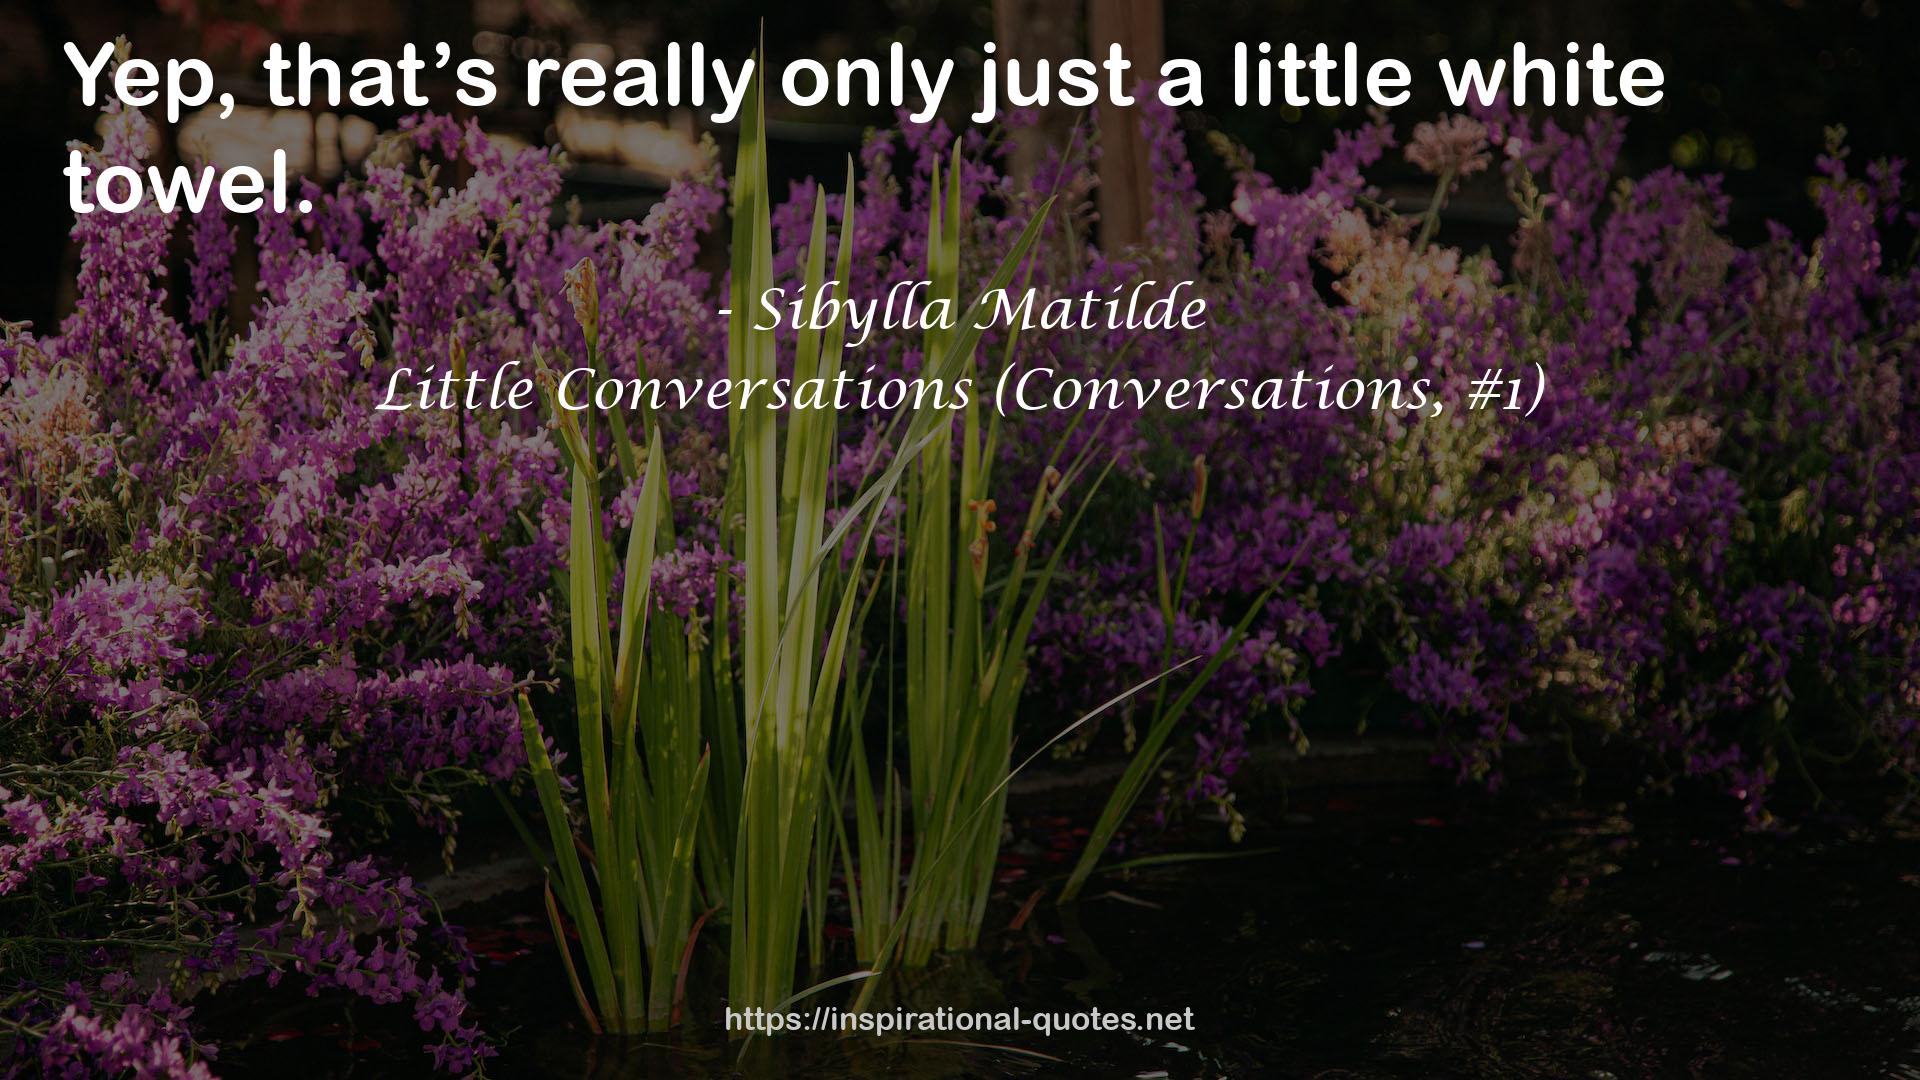 Little Conversations (Conversations, #1) QUOTES